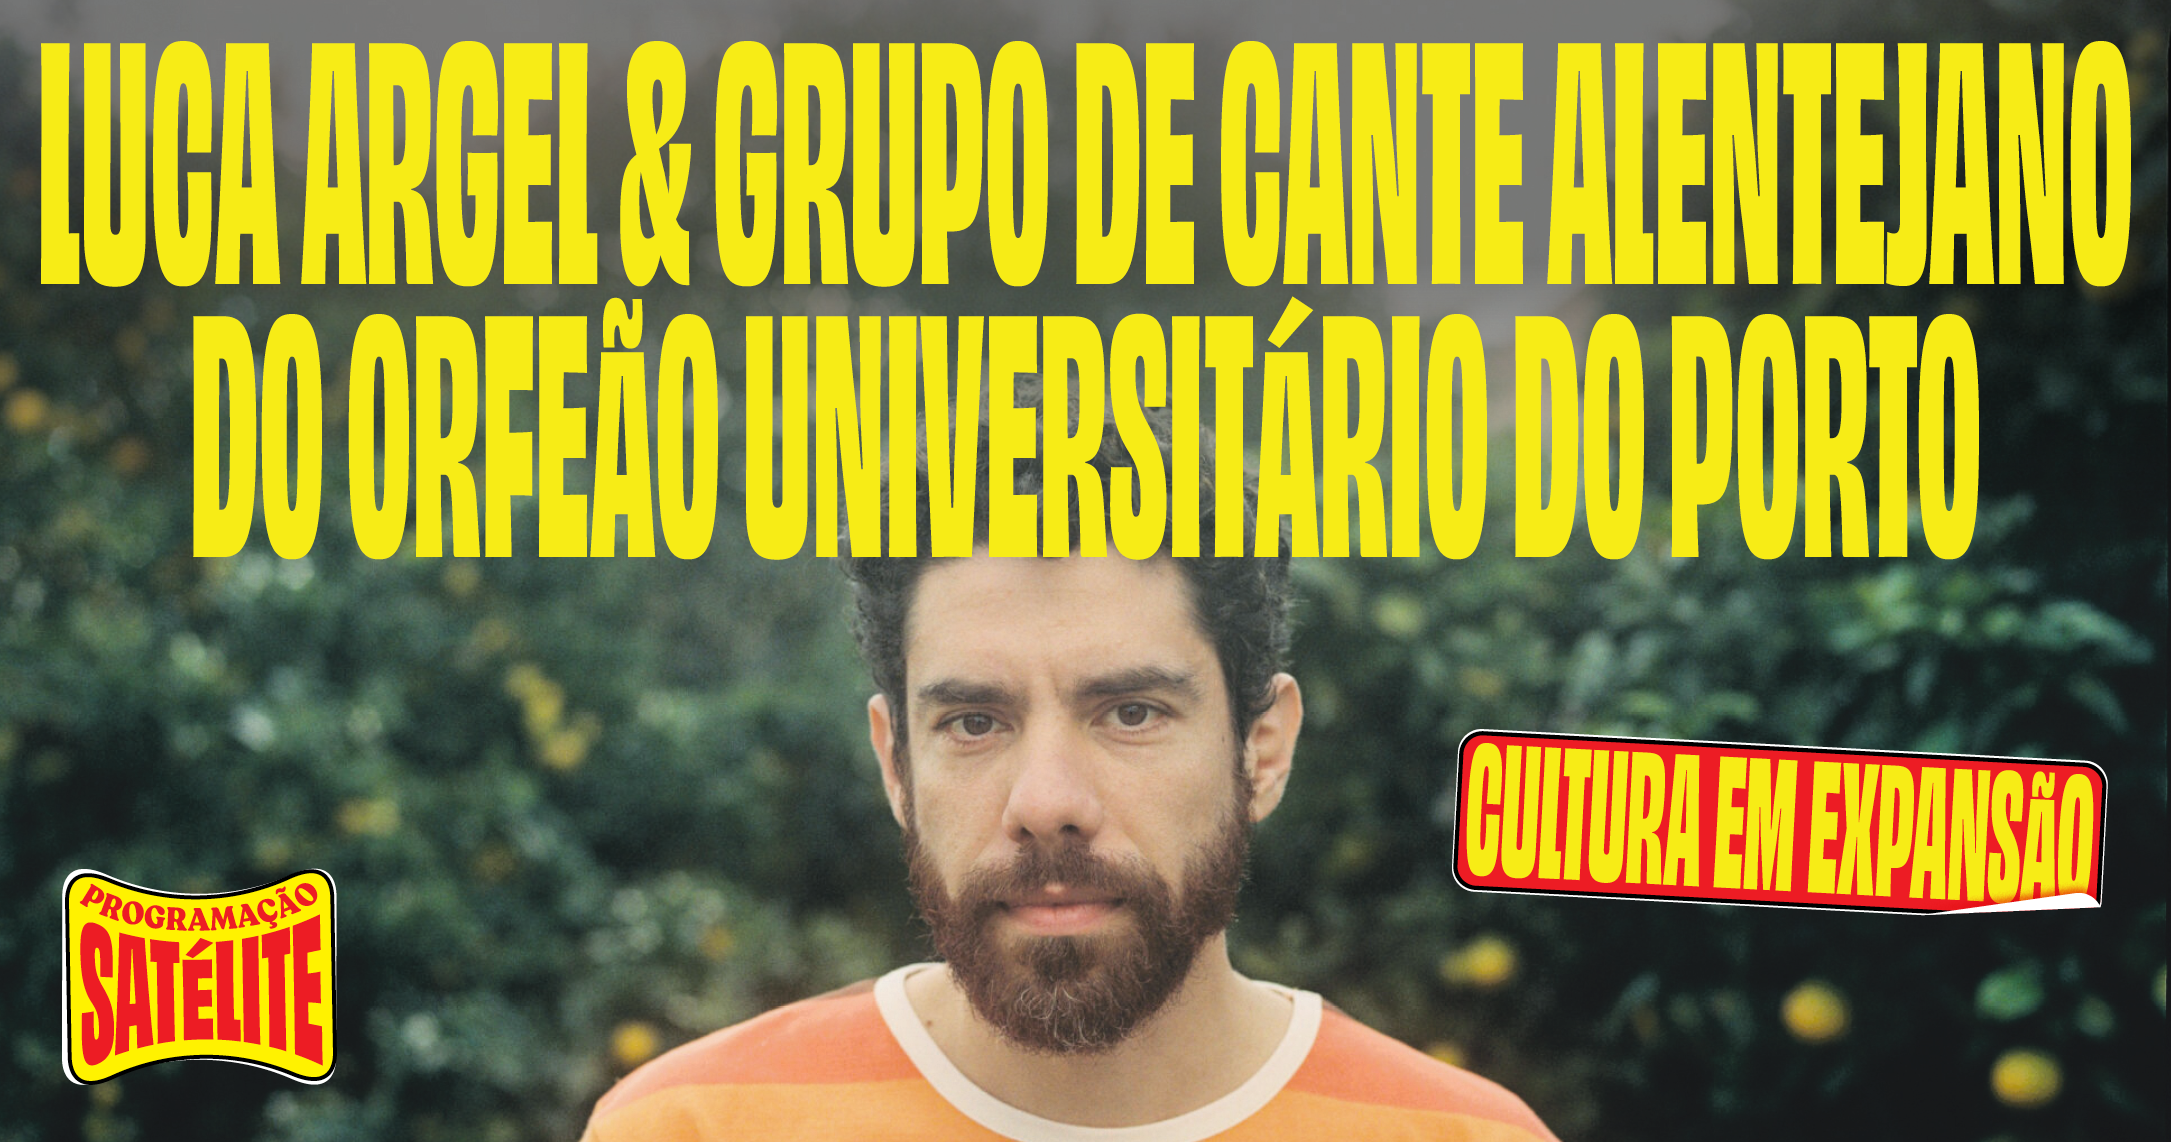 Capa do Evento Luca Argel & Grupo de Cante Alentejano do Orfeão Universitário do Porto